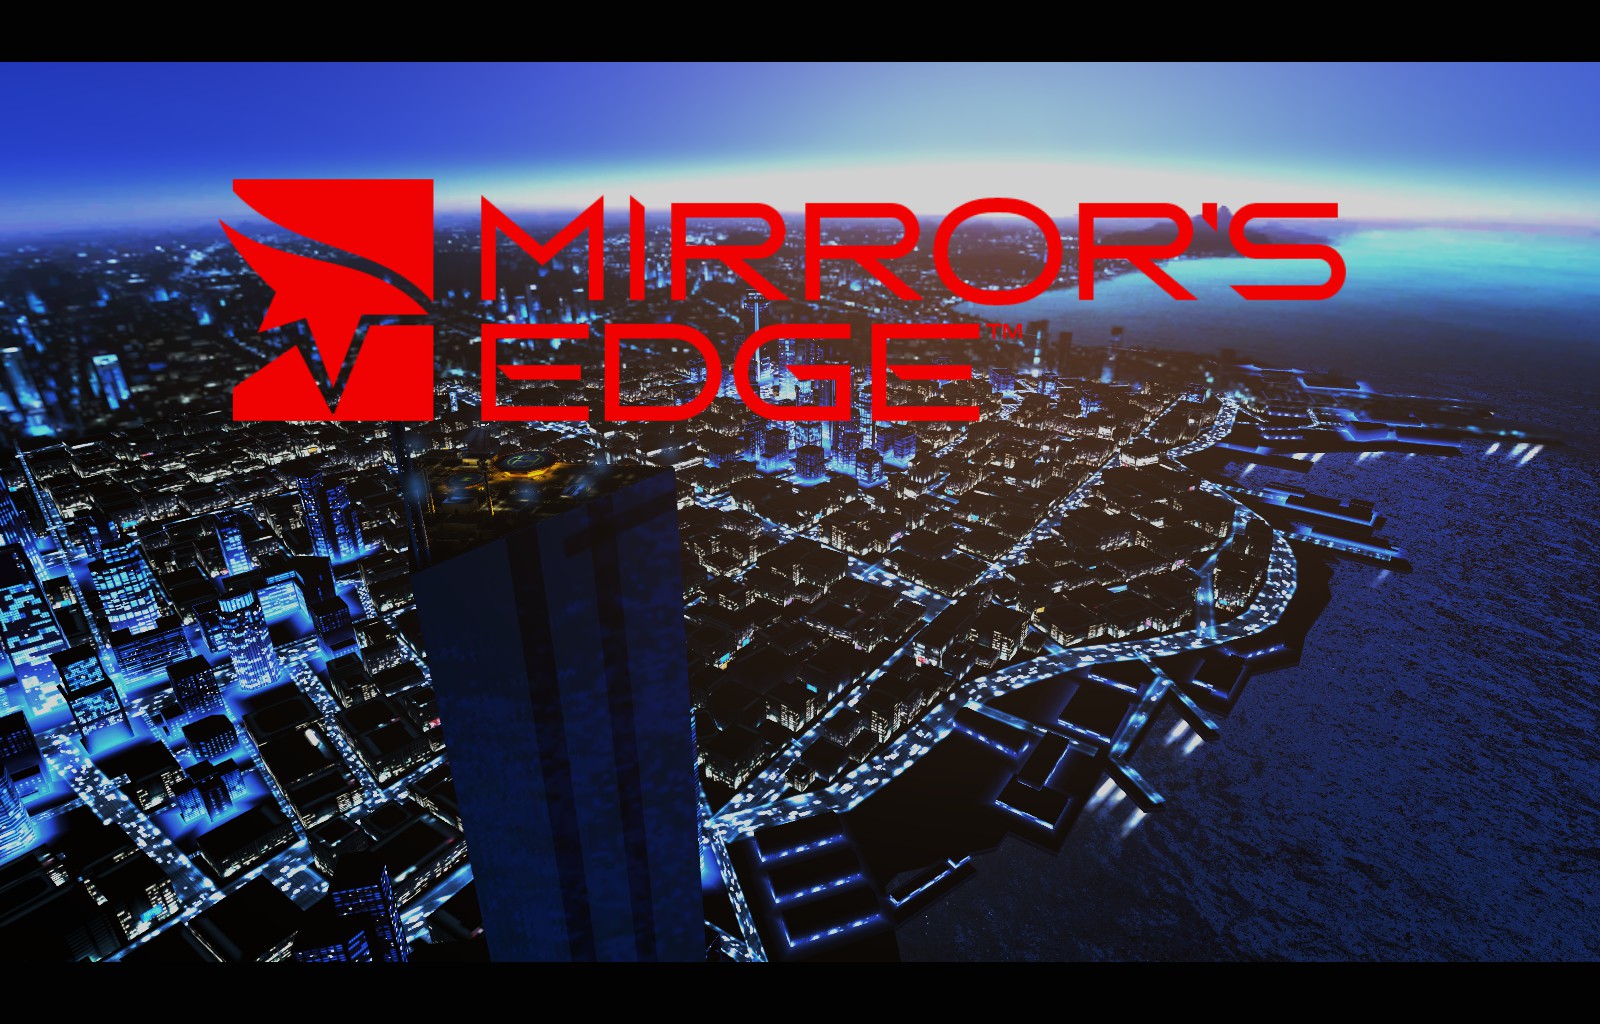 Mirror's Edge (PC)